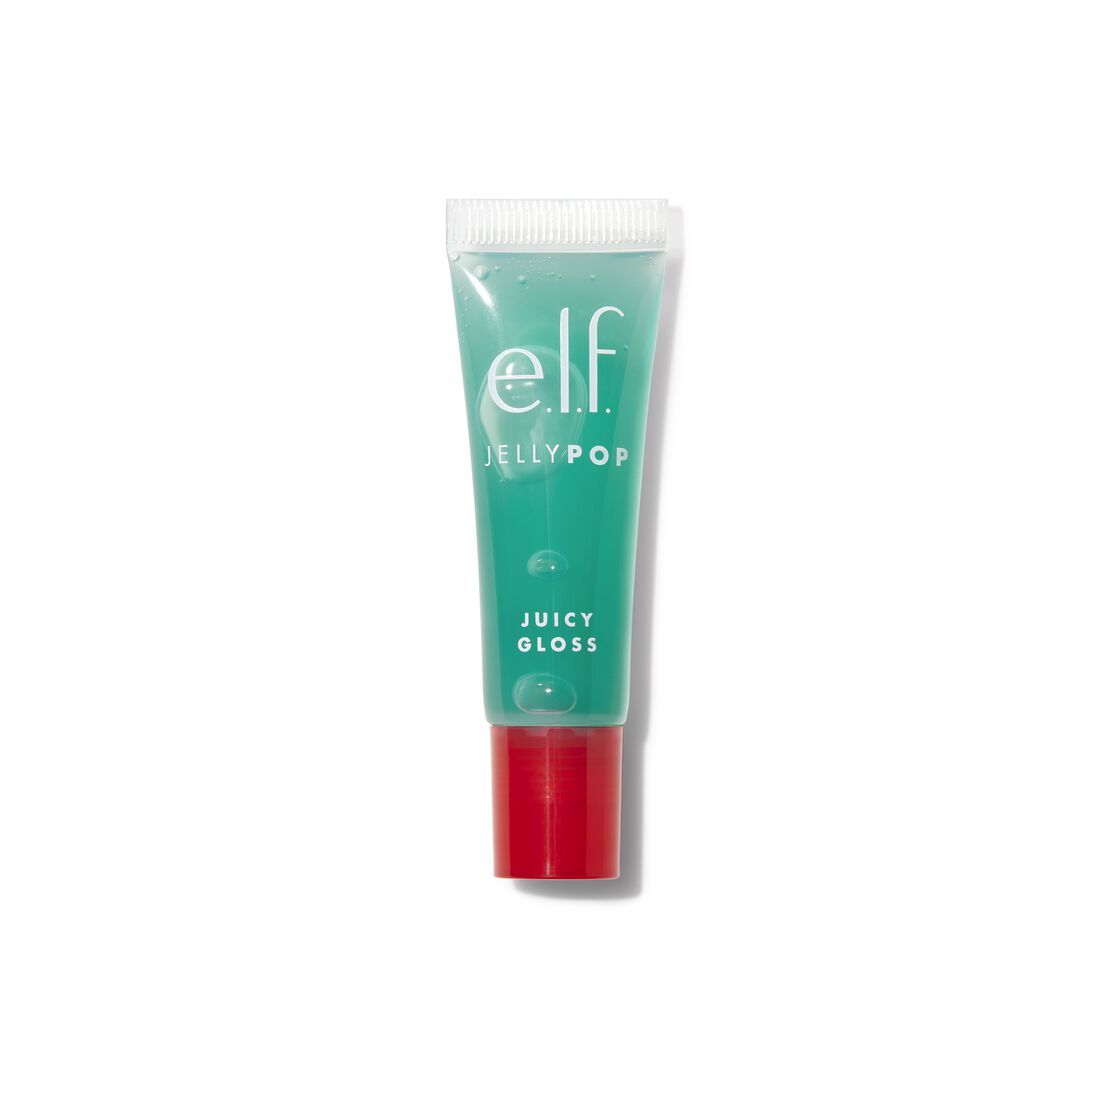 Jelly Pop Juicy Gloss | e.l.f. cosmetics (US)